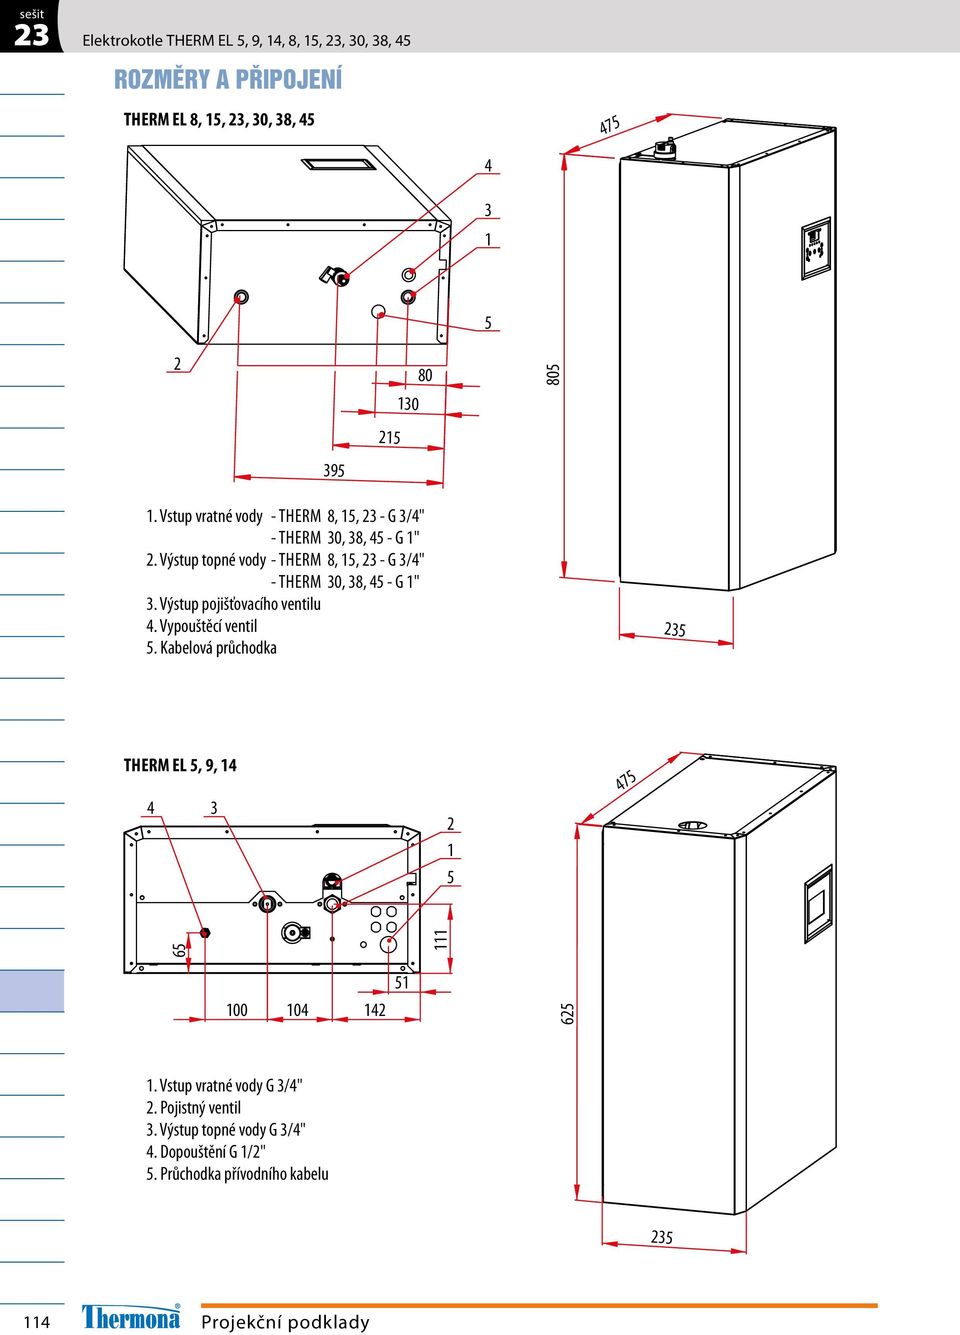 Výstup topné vody - THERM 8, 1, - G 3/4" - THERM 30, 38, 4 - G 1" 3. Výstup pojišťovacího ventilu 4. Vypouštěcí ventil.